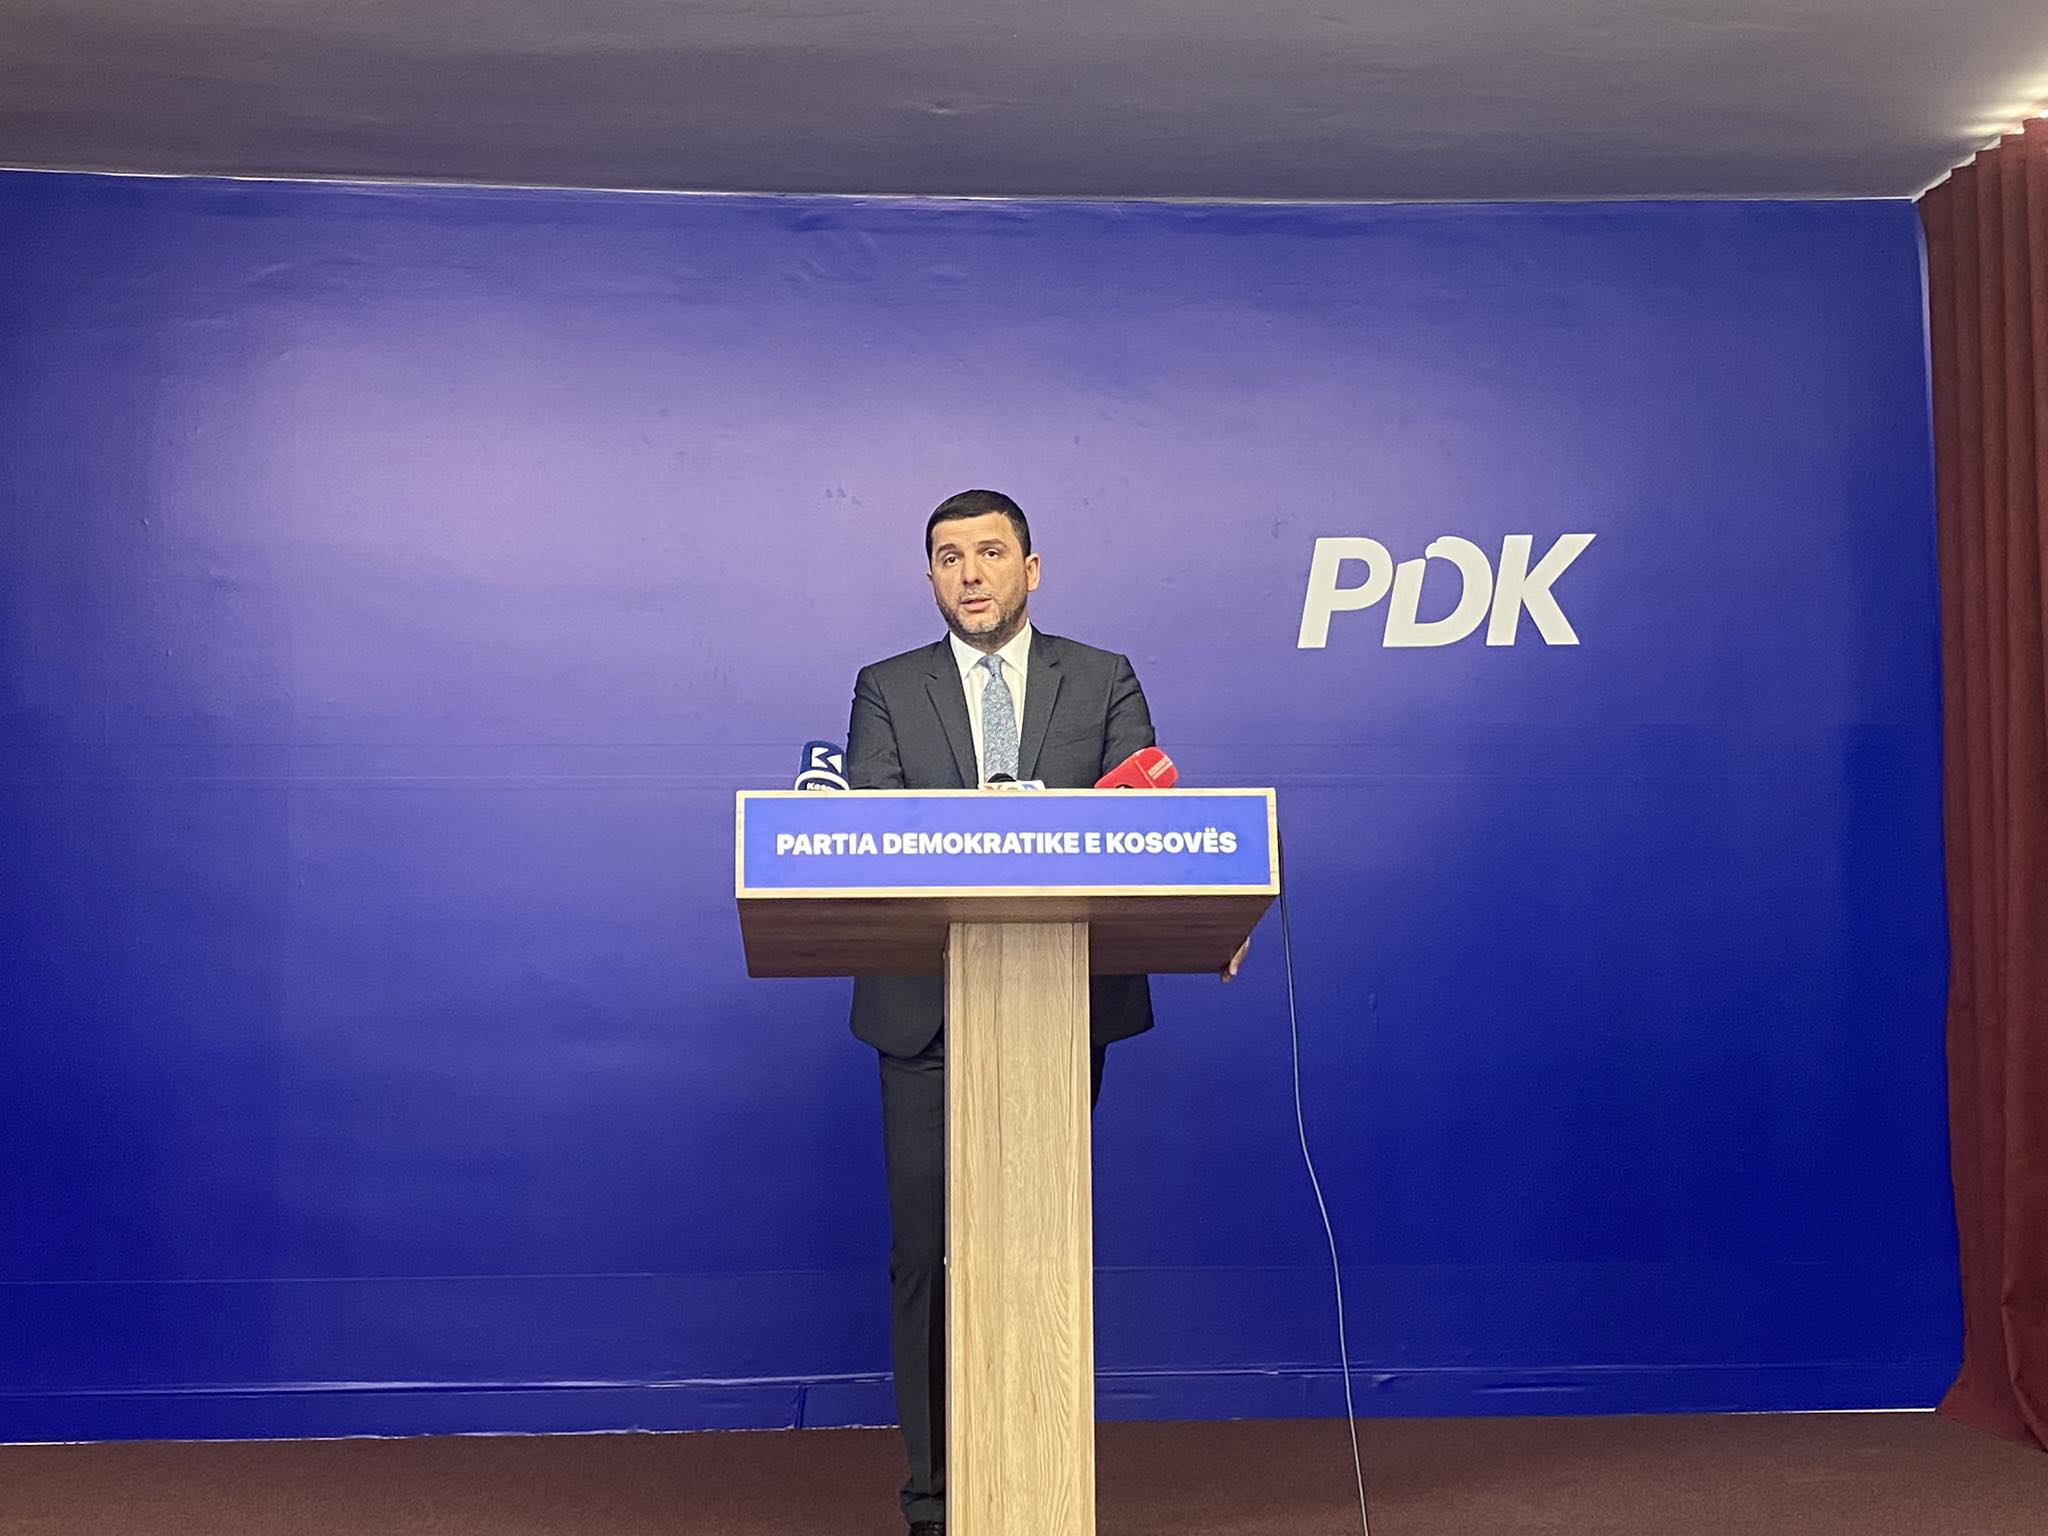 S’ka zgjedhje të parakohshme, Krasniqi: PDK nuk gjeti mbështetje nga partitë opozitare